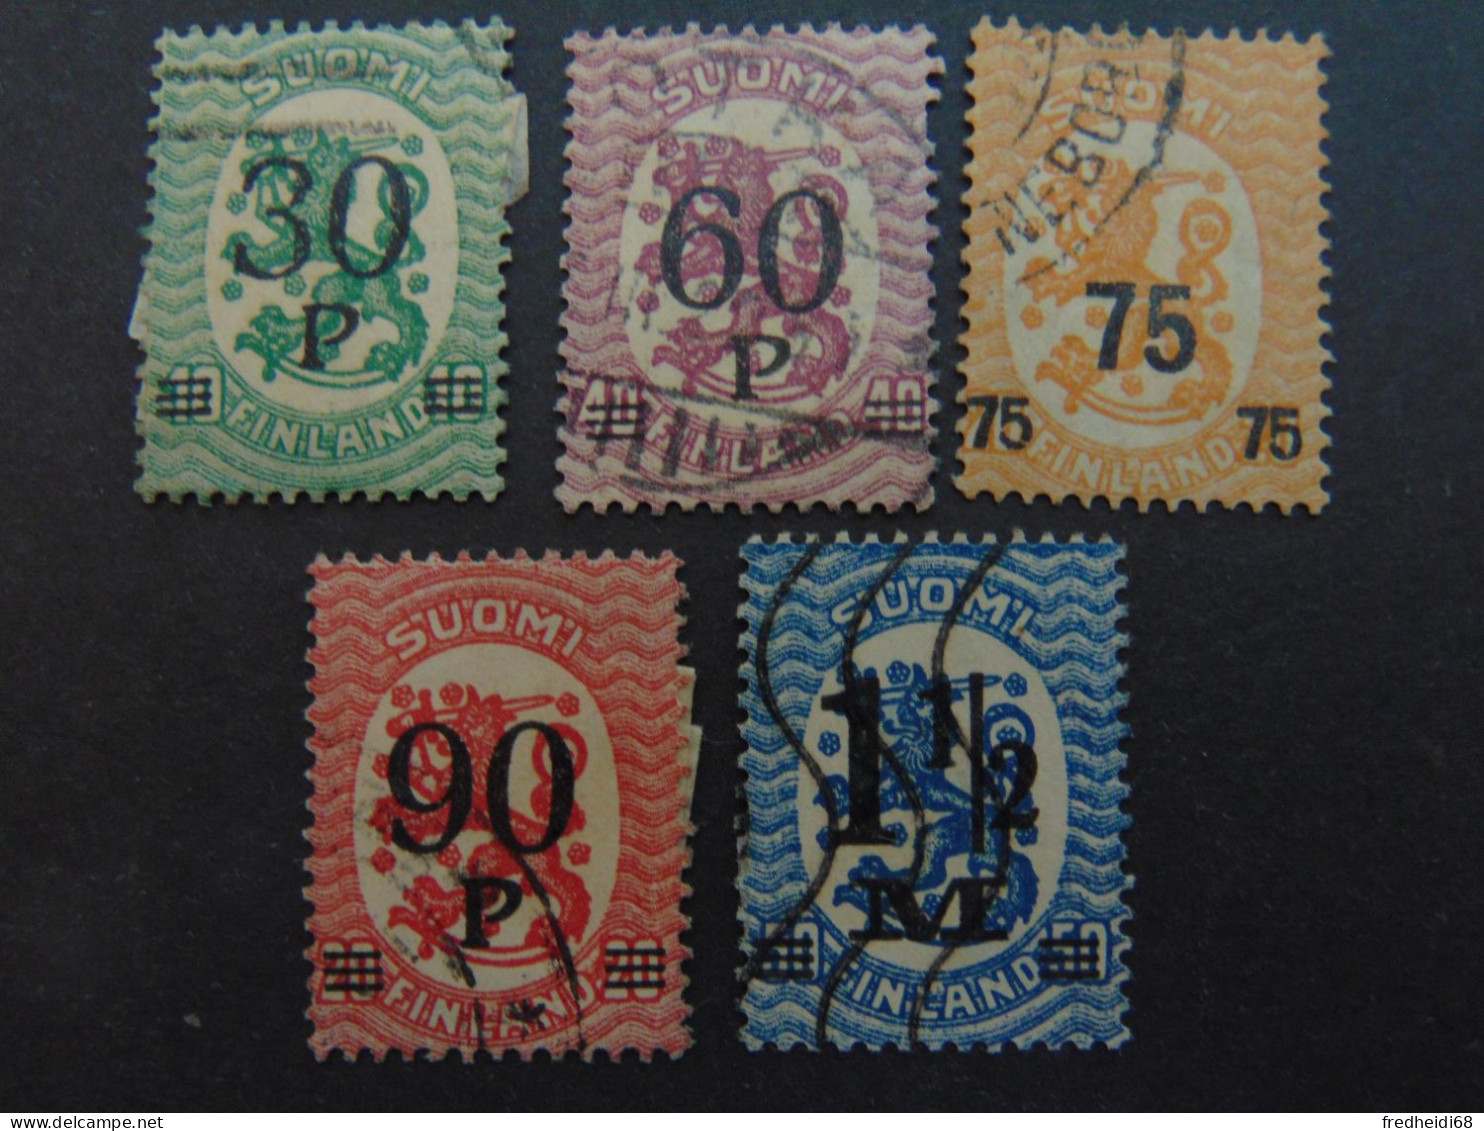 Magnifique Lot Des N°. 94 à 98 Oblitérés - Used Stamps